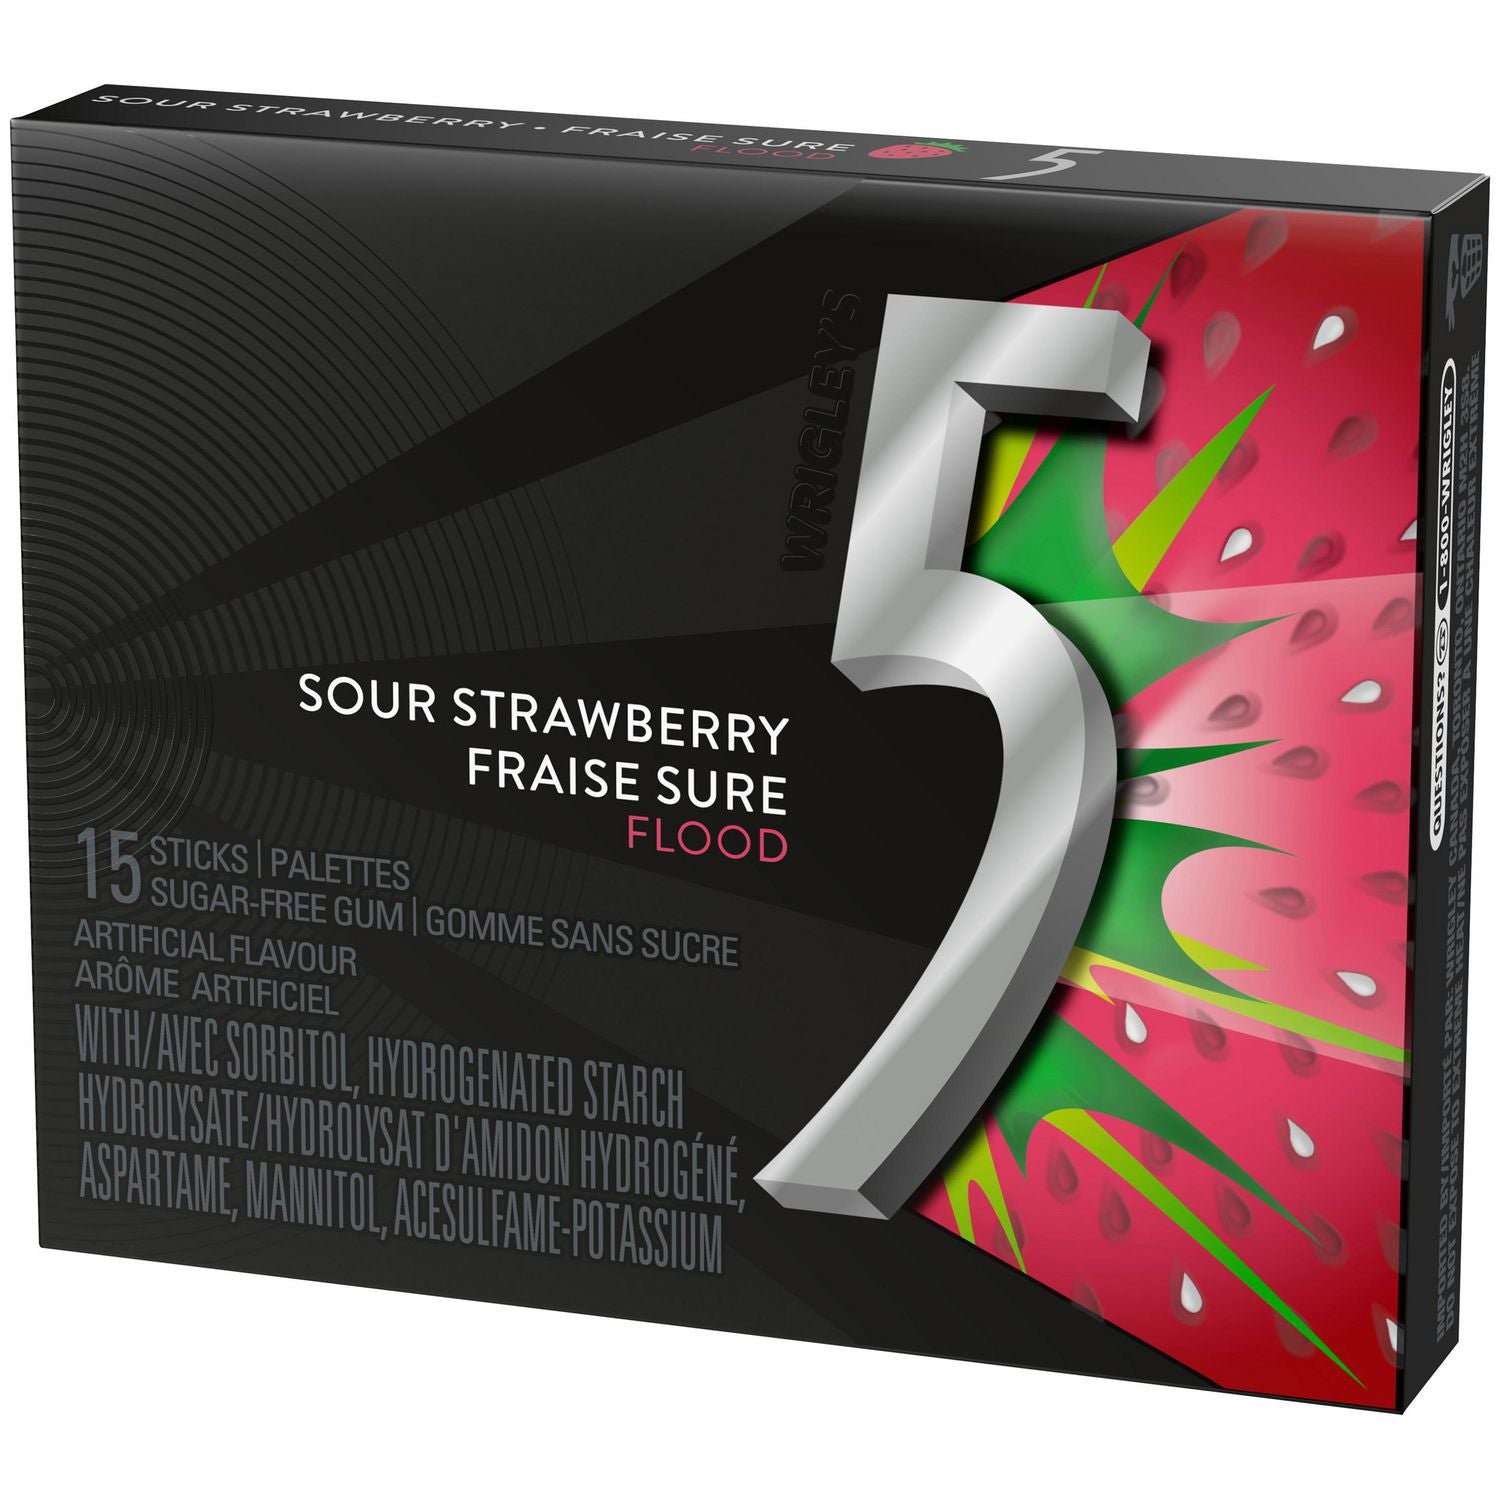 5 Gum - Sour Strawberry Flood